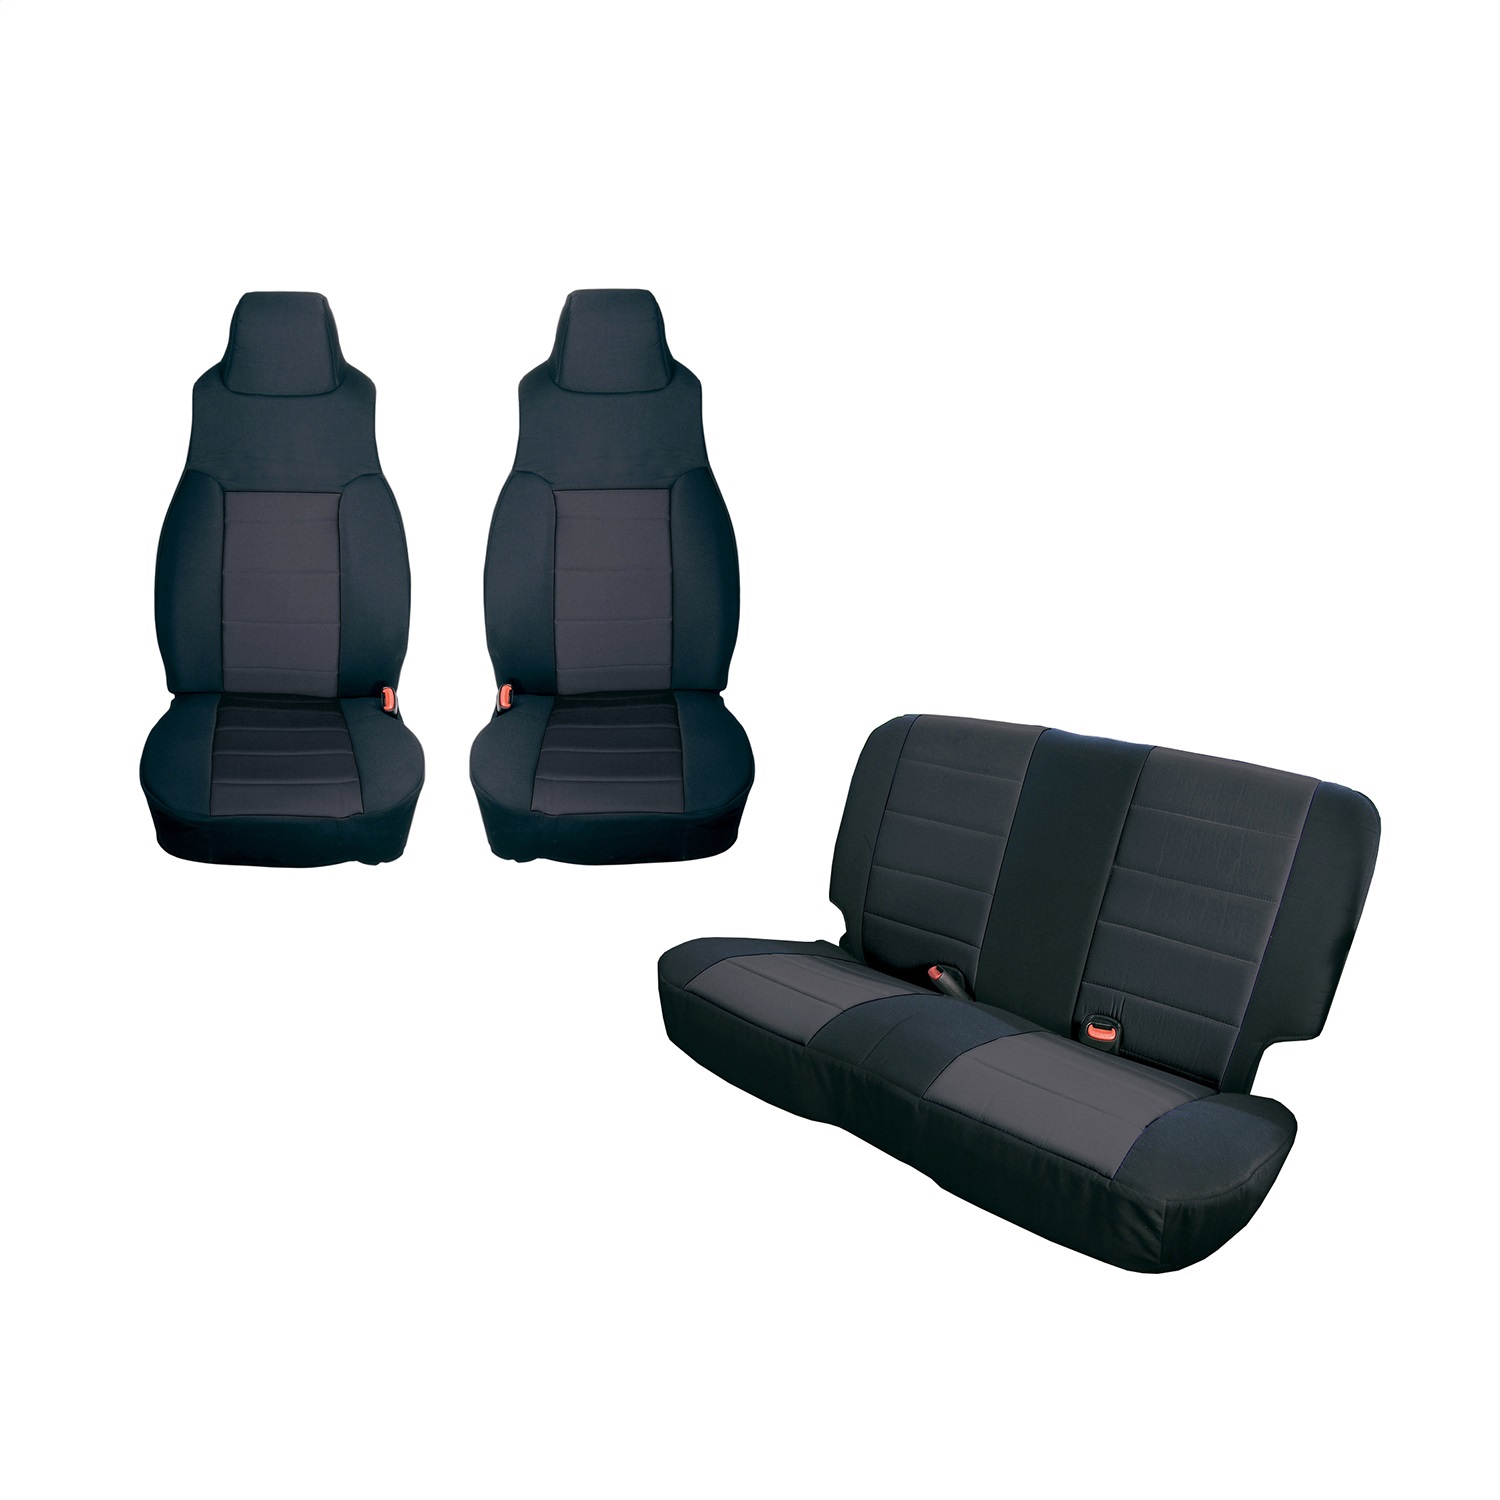 Rugged Ridge 13292.01 Seat Cover Kit Fits 97-02 Wrangler (TJ)